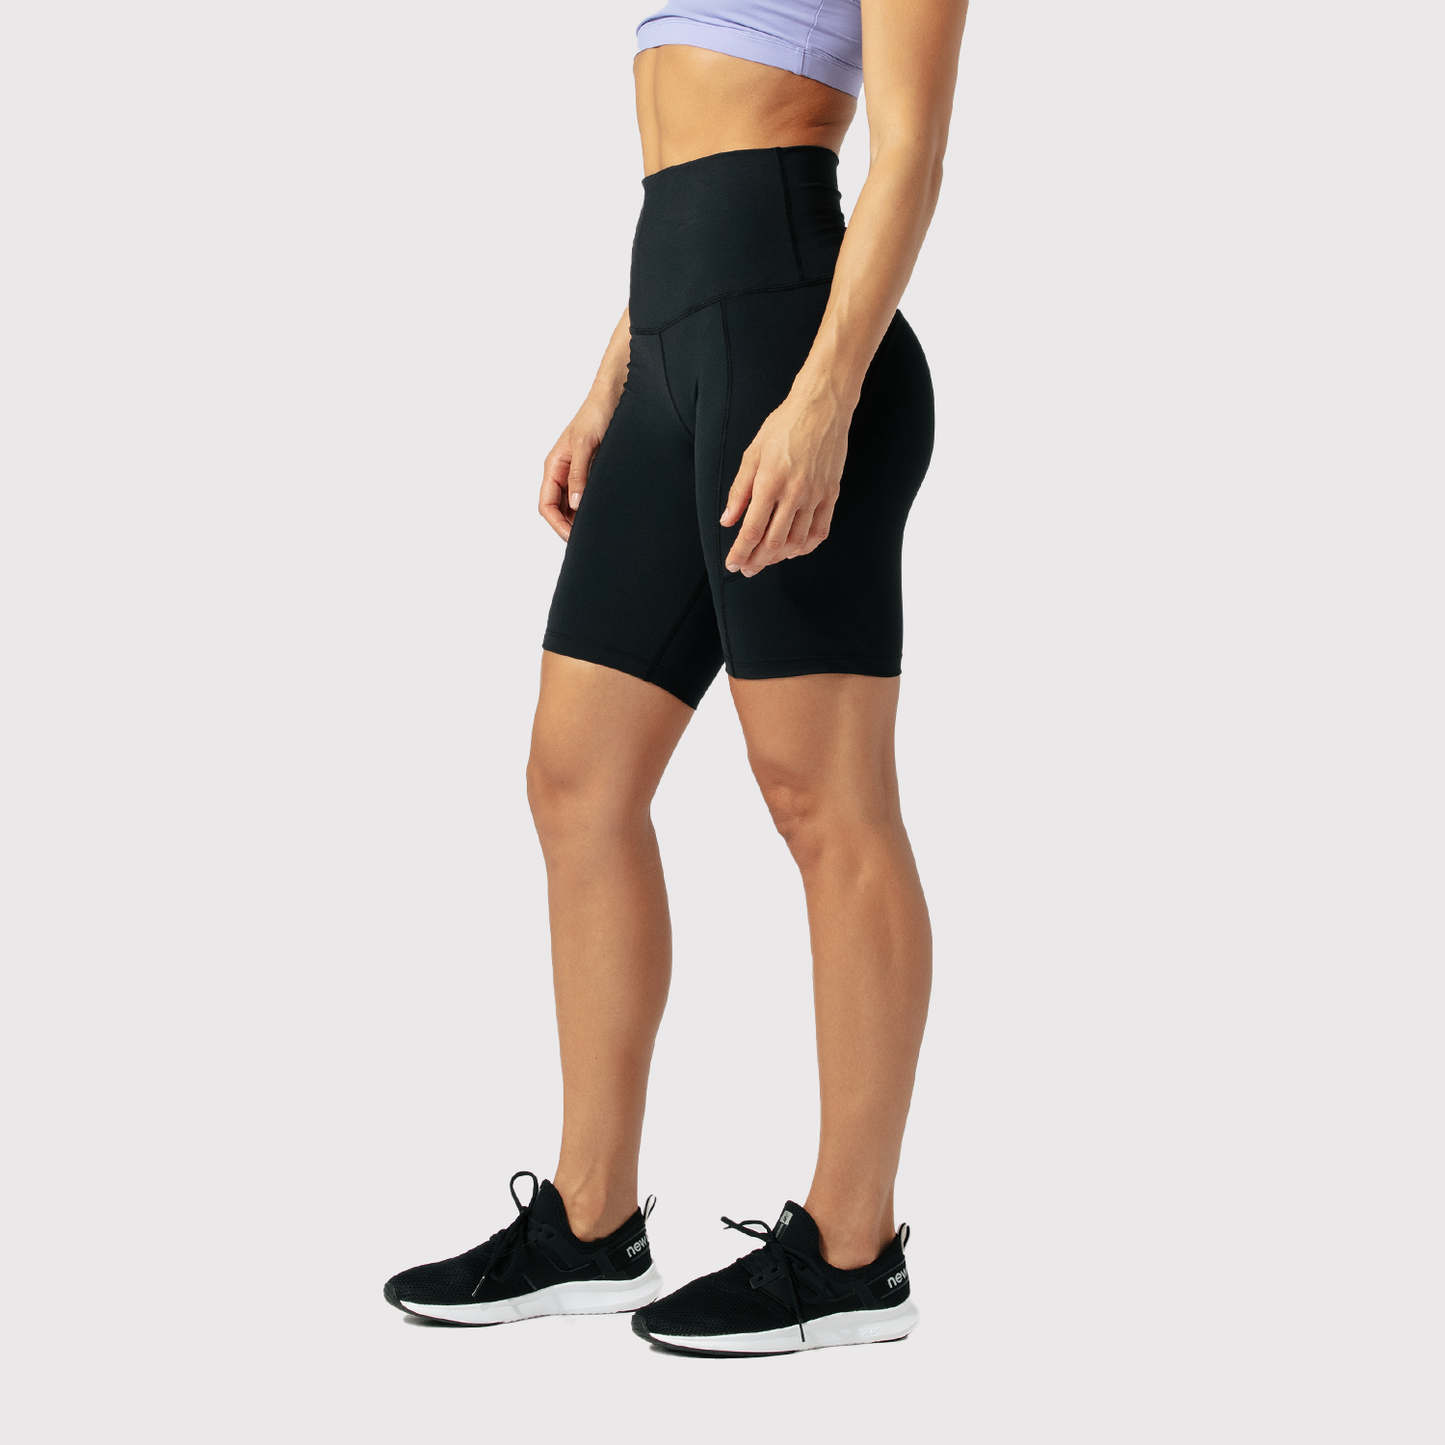 High Waist Compression Shorts - Black - Active Trendz